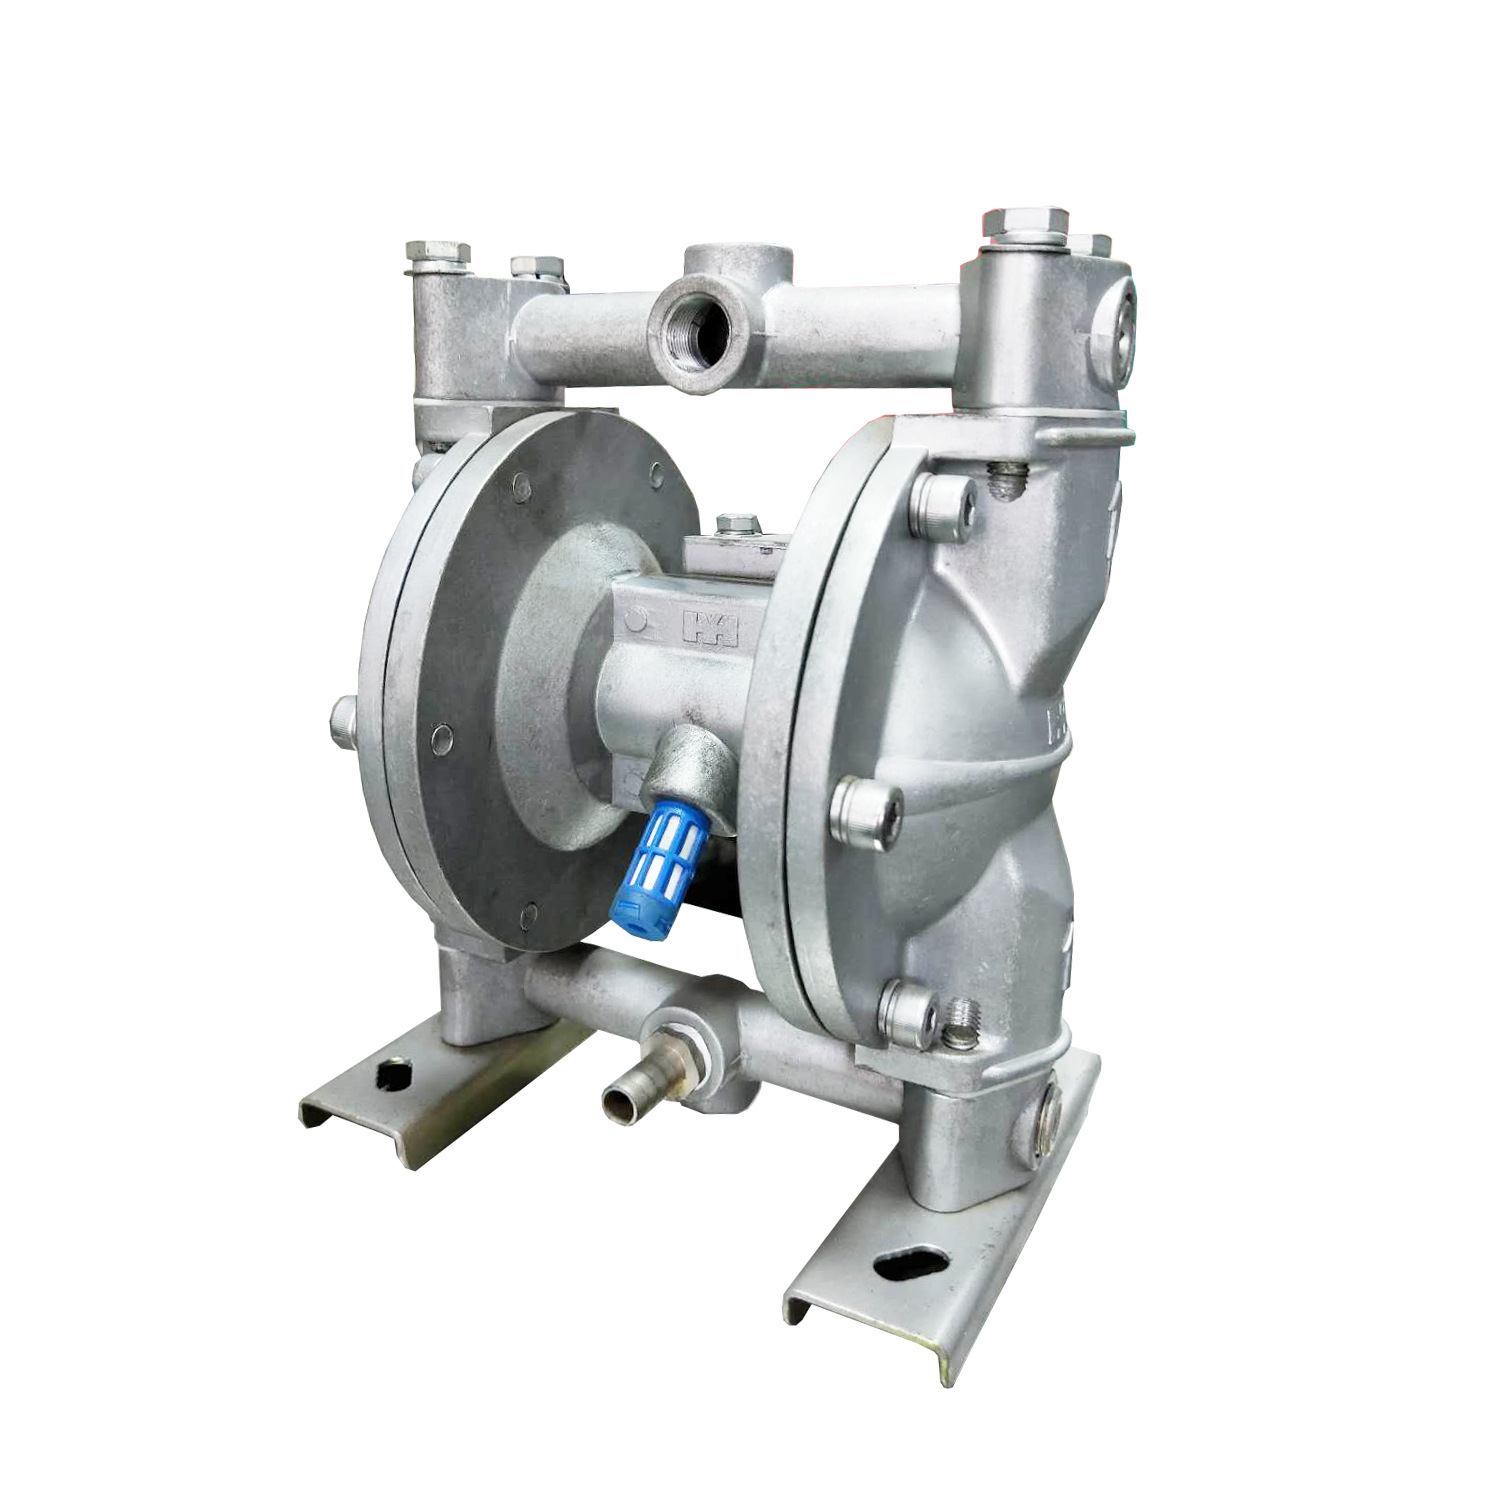 气动隔膜泵为容积式泵图片